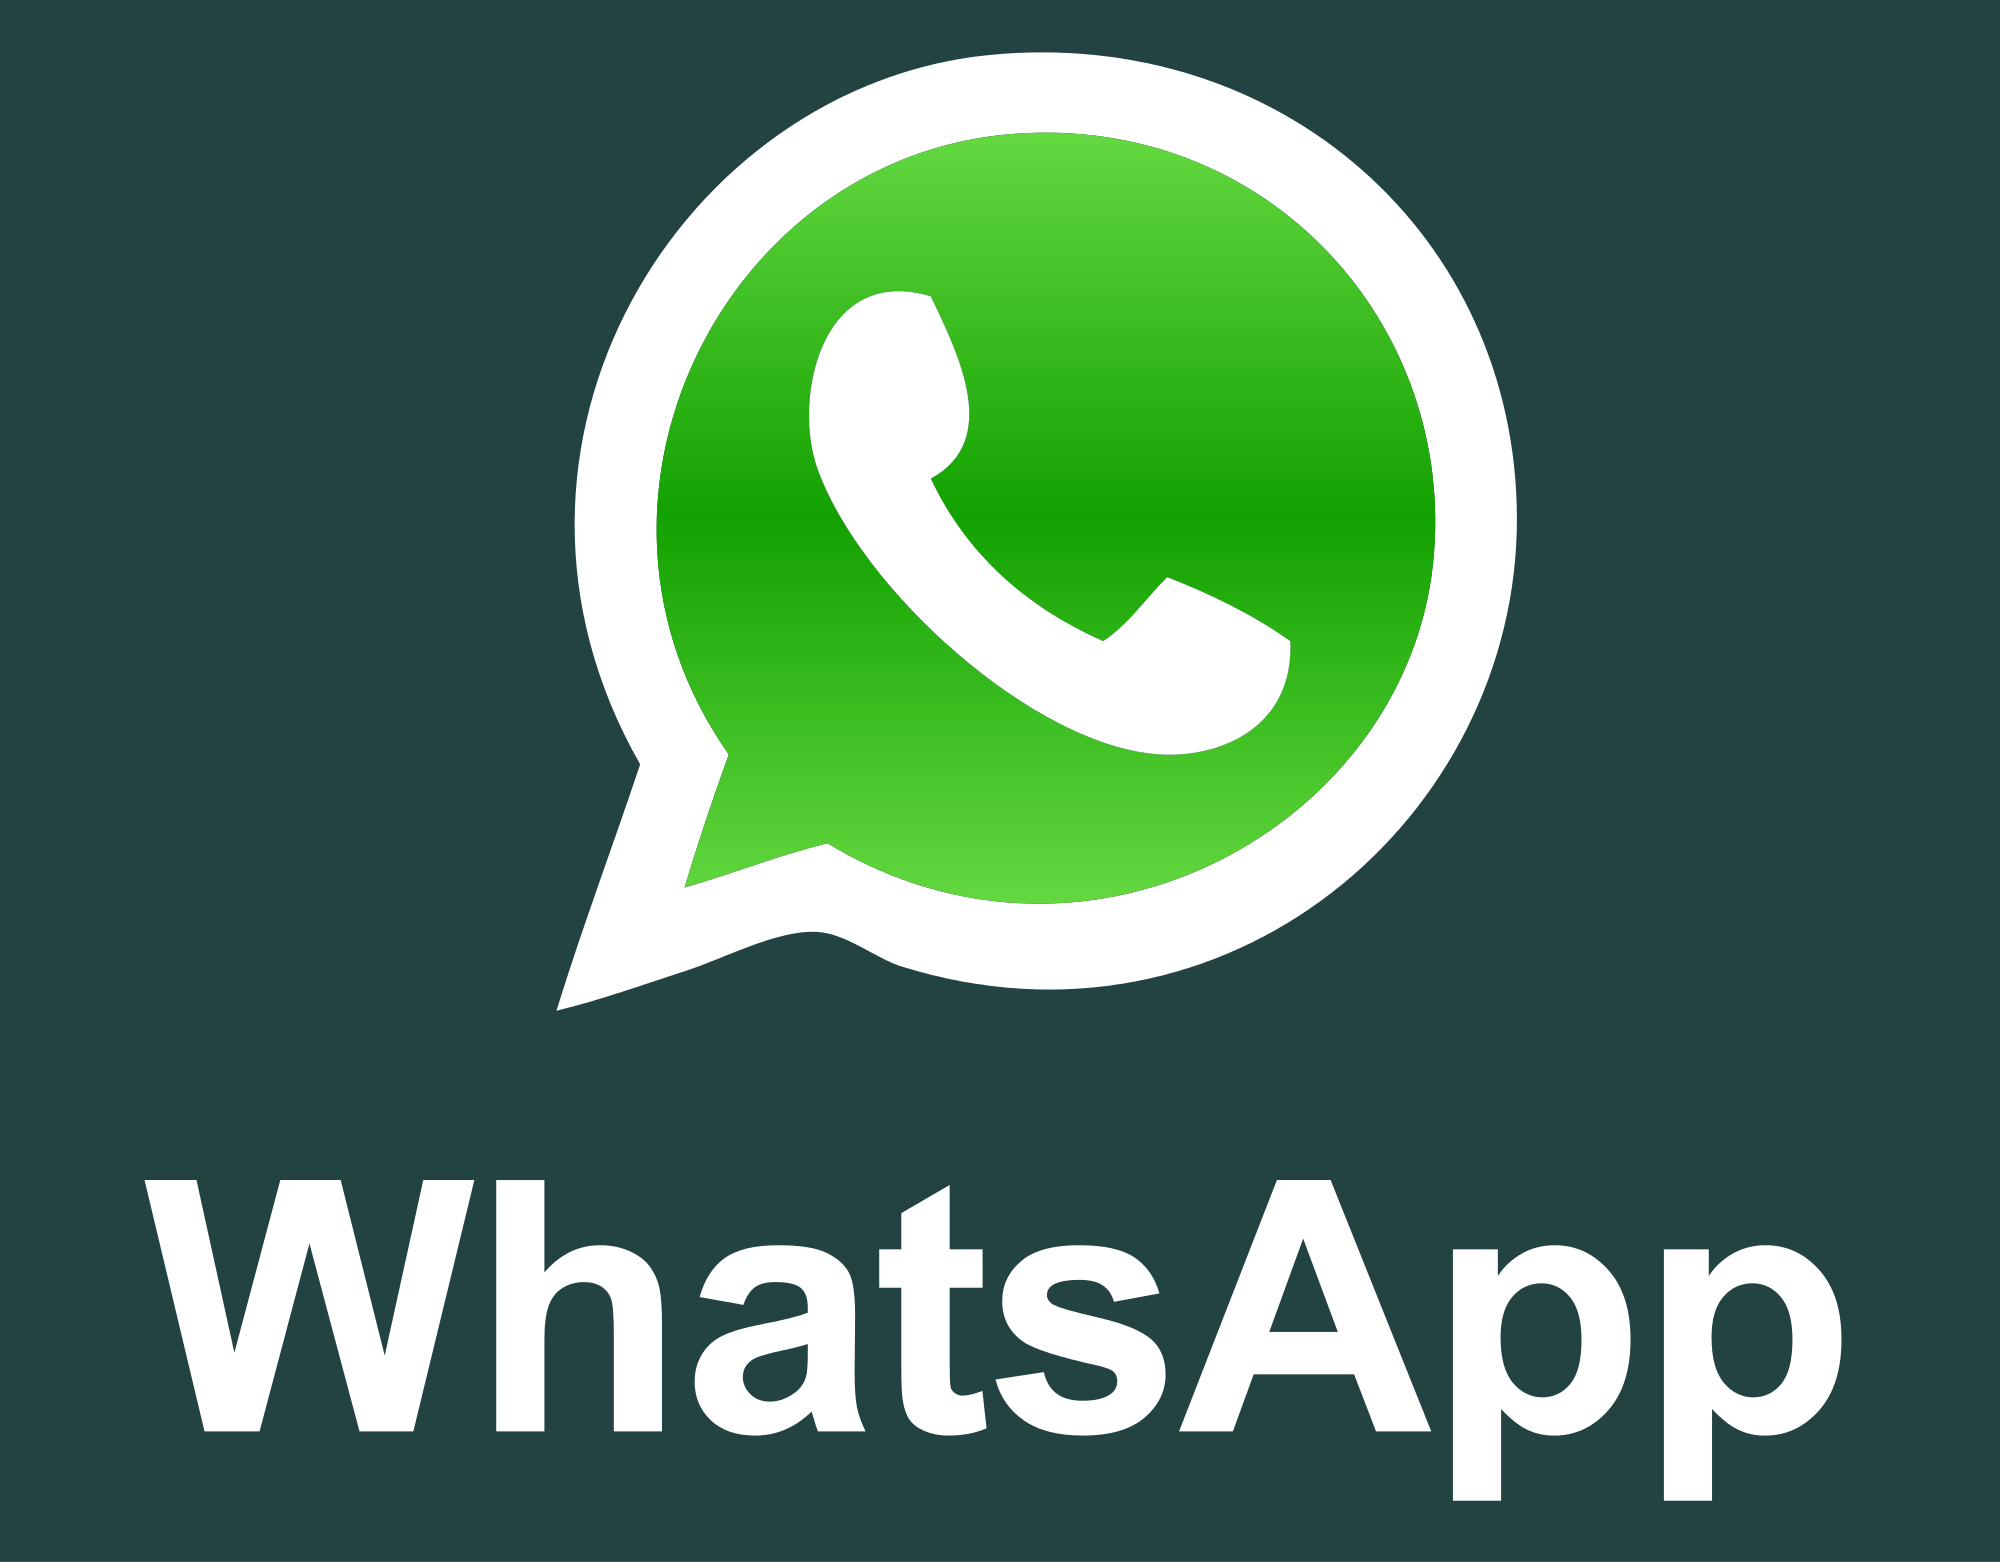 WhatssApp podrá compartir tu información con Facebook | Economipedia